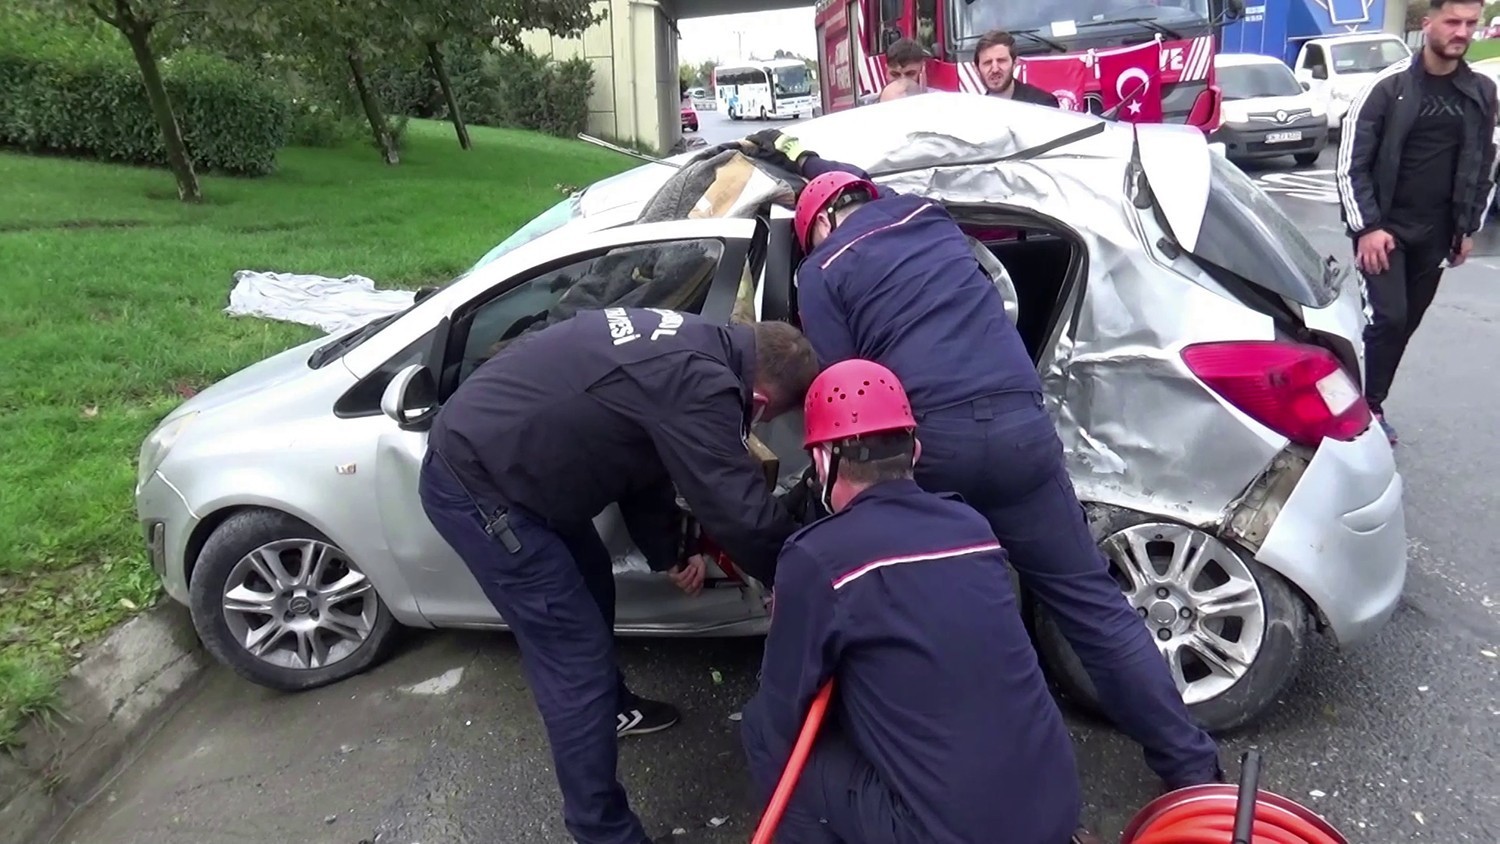 Direksiyon hakimiyetini kaybeden sürücü, servis aracına çarptı: 2 yaralı #istanbul